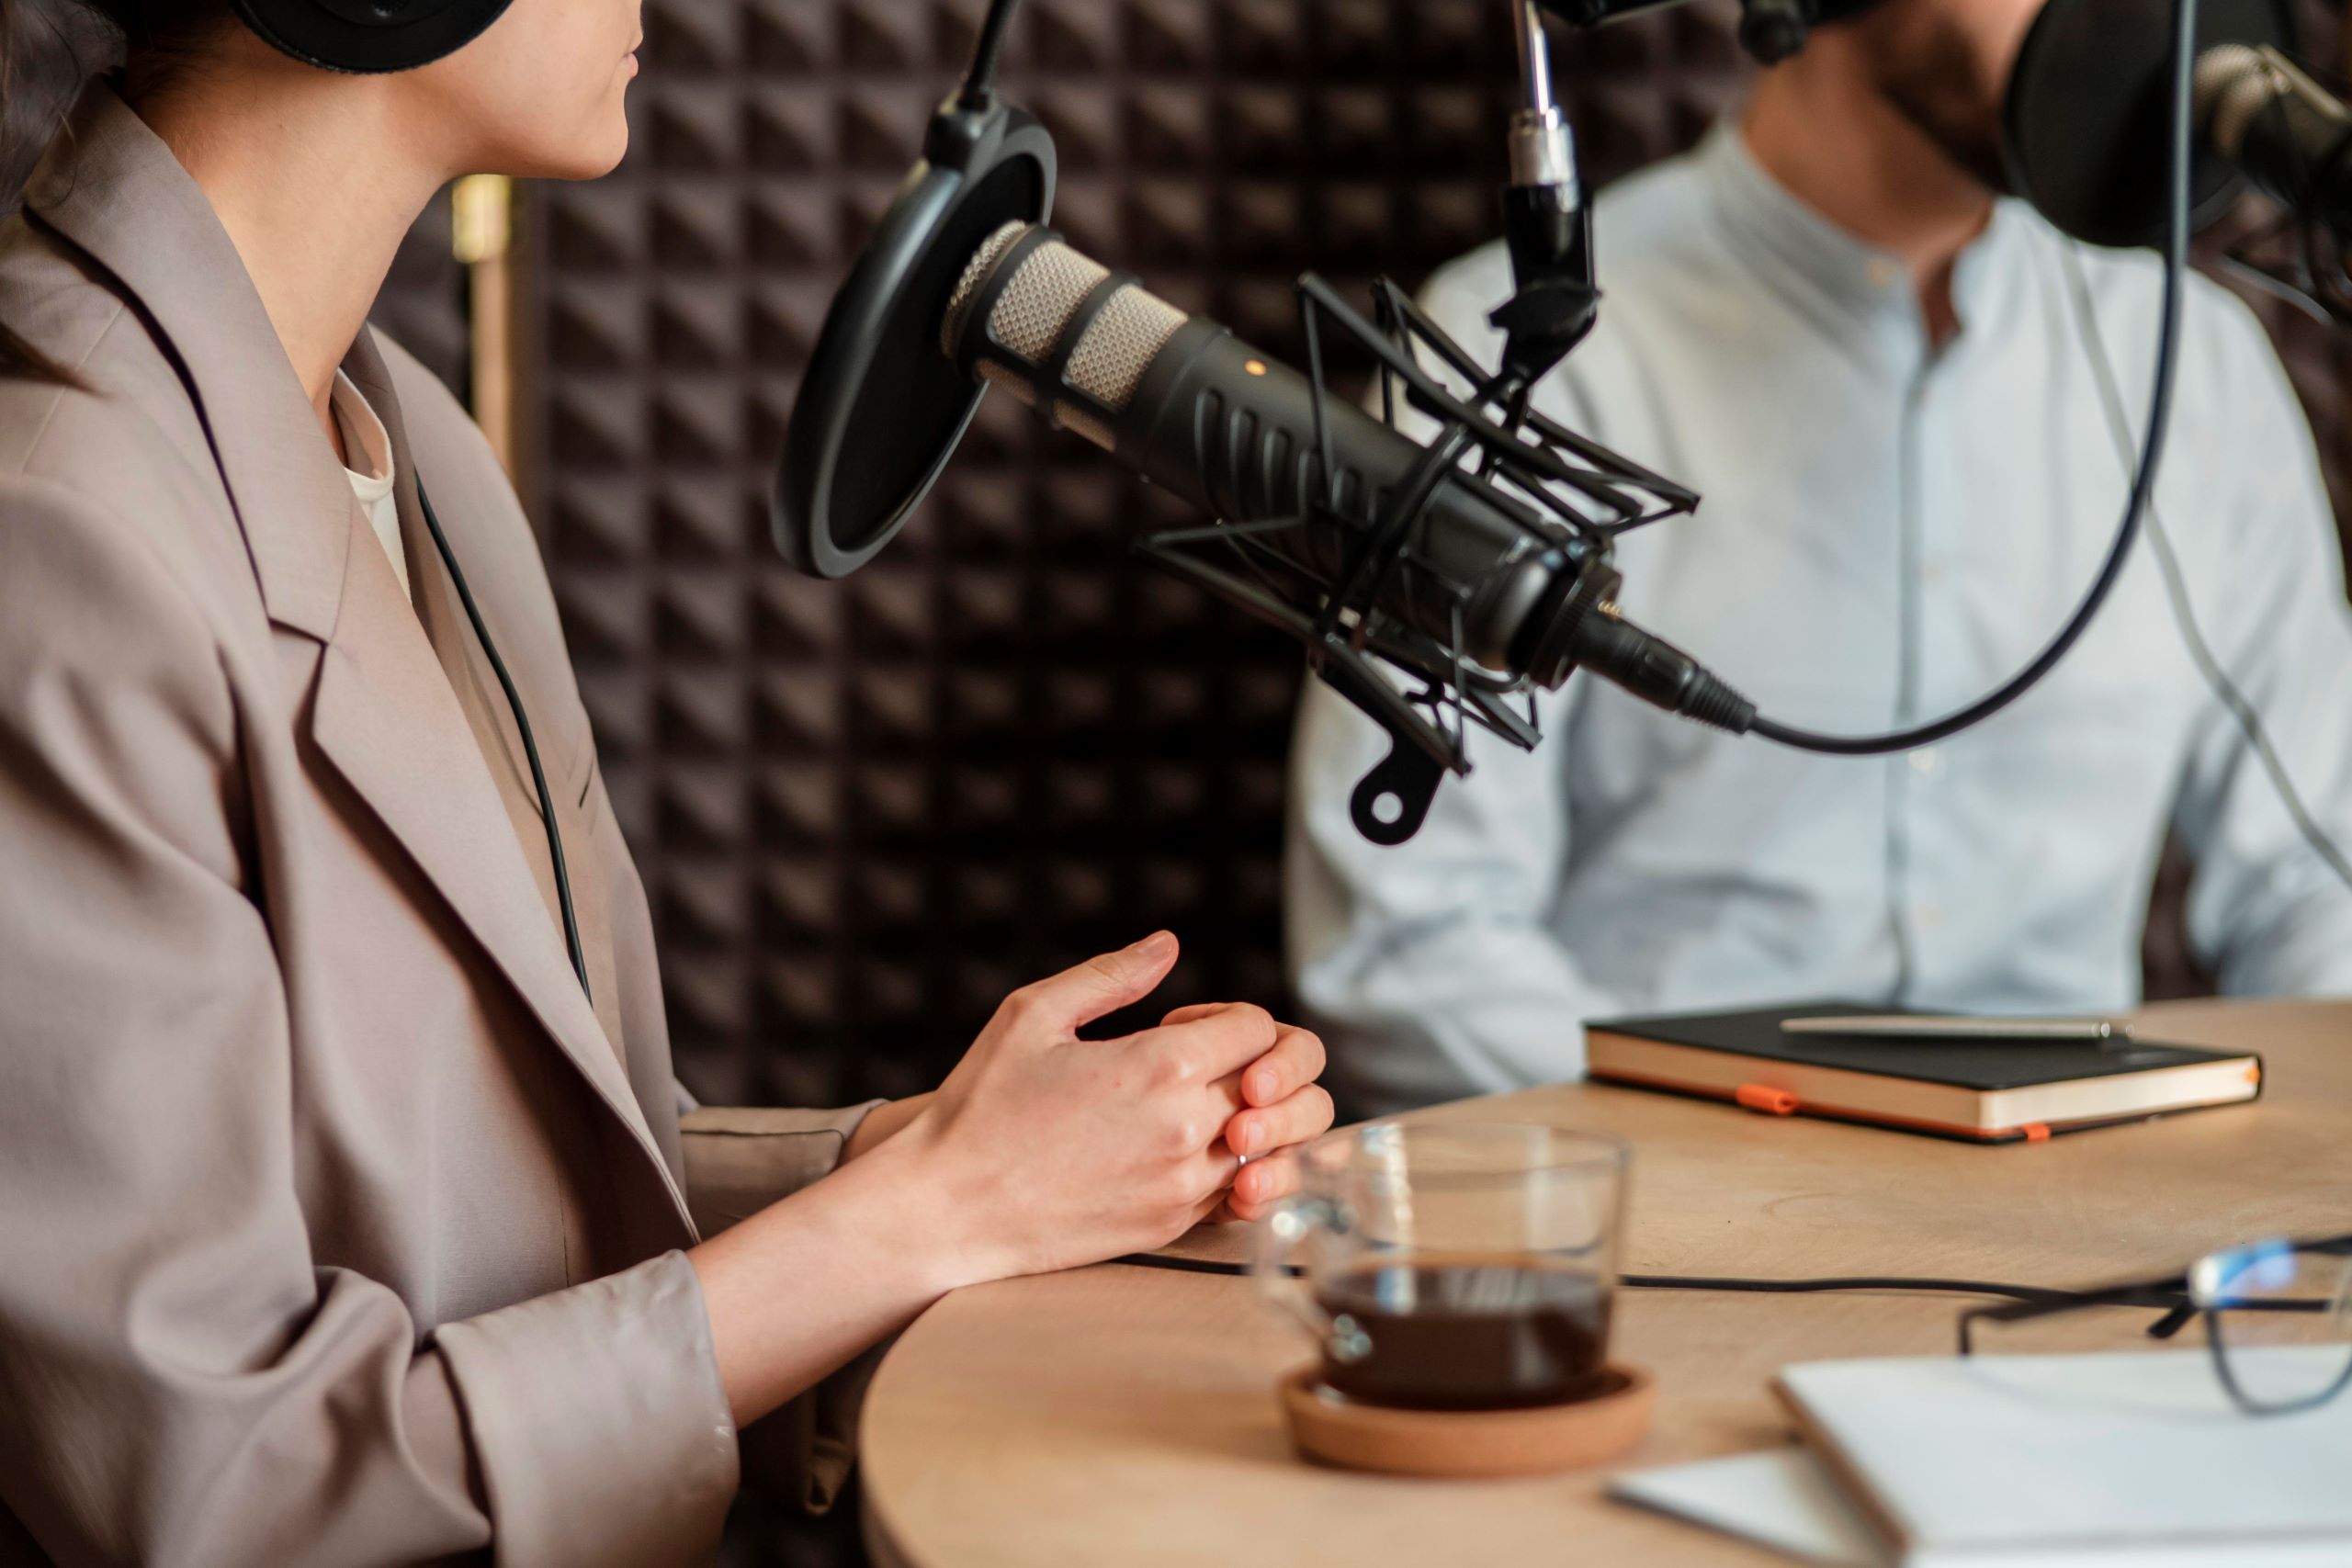 Os podcasts têm se tornado uma forma popular e eficaz de consumir conteúdo, permitindo que as pessoas se conectem e aprendam enquanto estão em movimento. Se você está buscando aumentar sua visibilidade, construir autoridade em seu nicho de mercado e se conectar de forma mais íntima com seu público, a gravação de podcasts pode ser a solução perfeita. Neste artigo, exploraremos o poder dos podcasts e como a BP Marketing pode ajudá-lo a criar e promover um podcast profissional que se destaque na multidão.